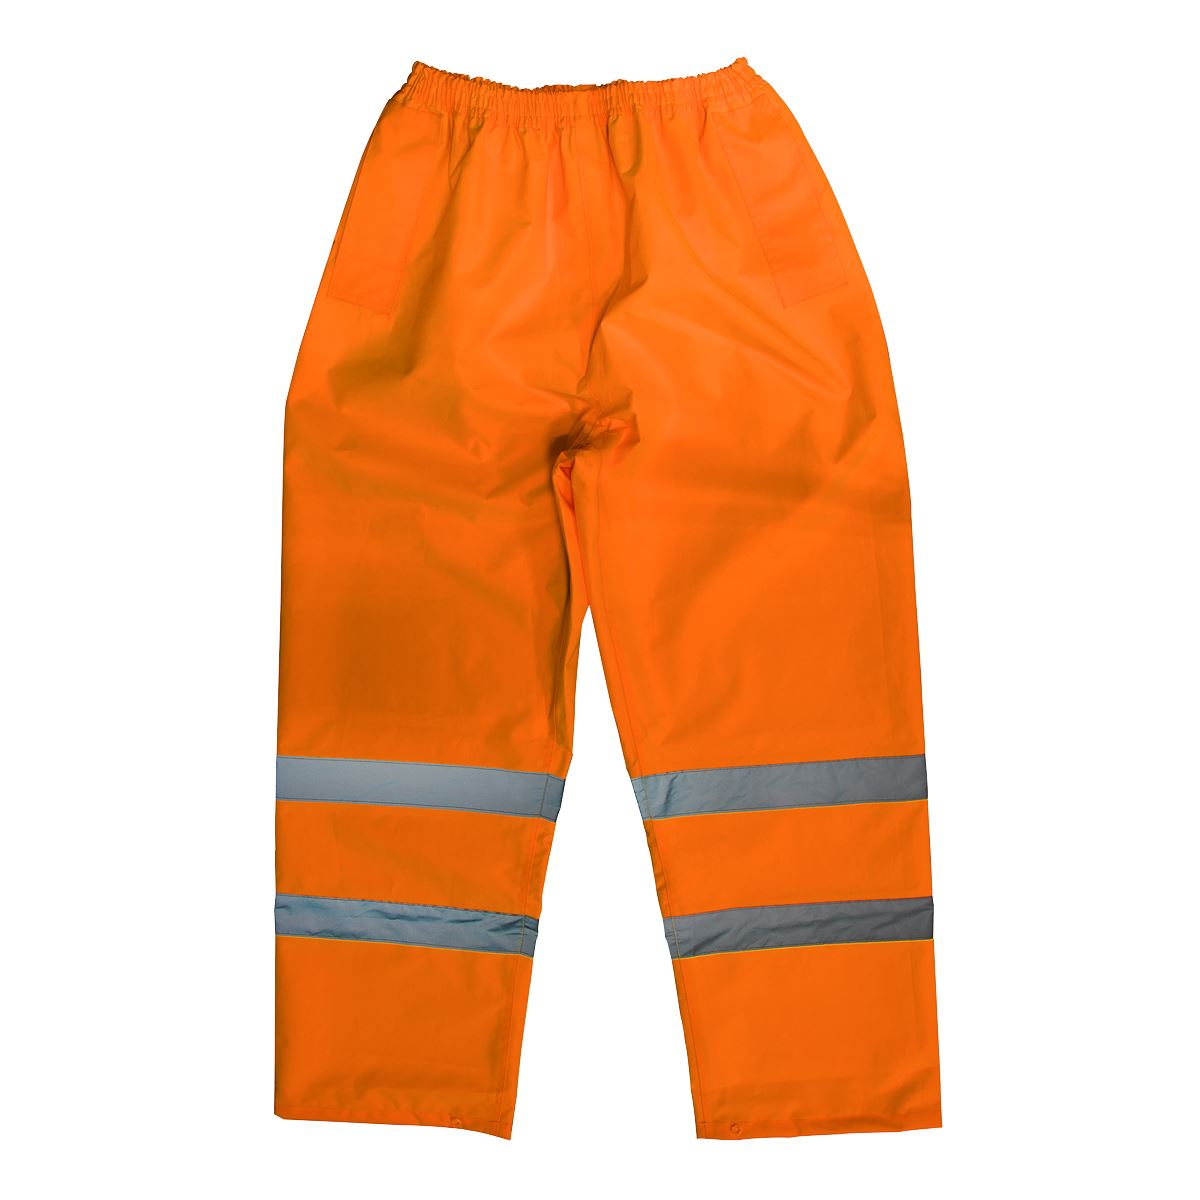 Worksafe by Sealey Hi-Vis Orange Waterproof Trousers - XX-Large